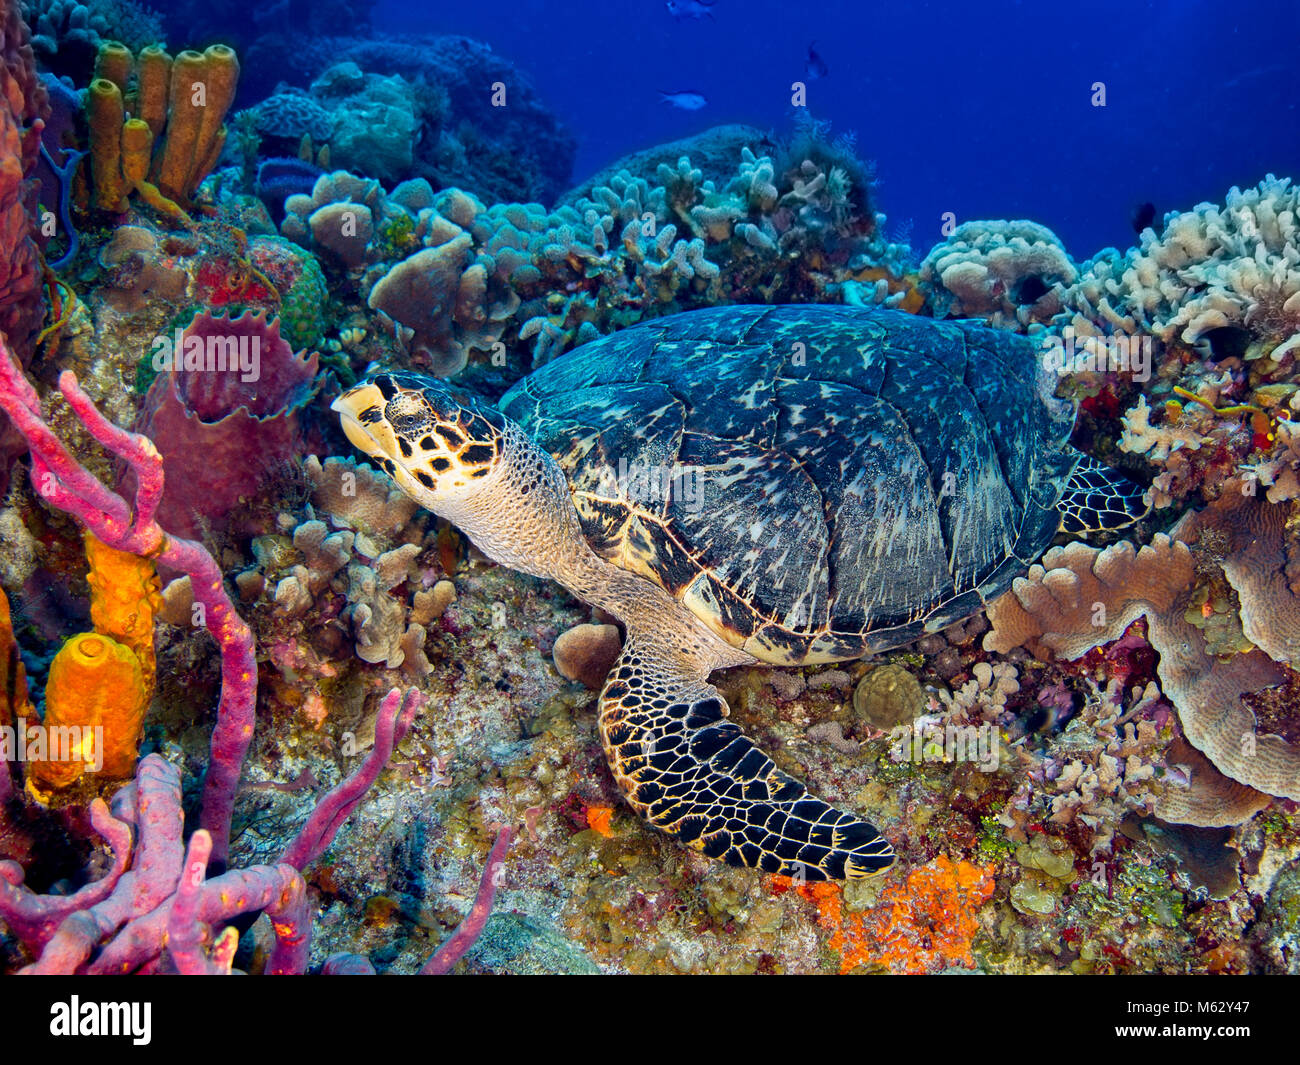 La tortuga carey descansando sobre coloridos arrecifes de coral con esponjas y agua azul. Foto de stock